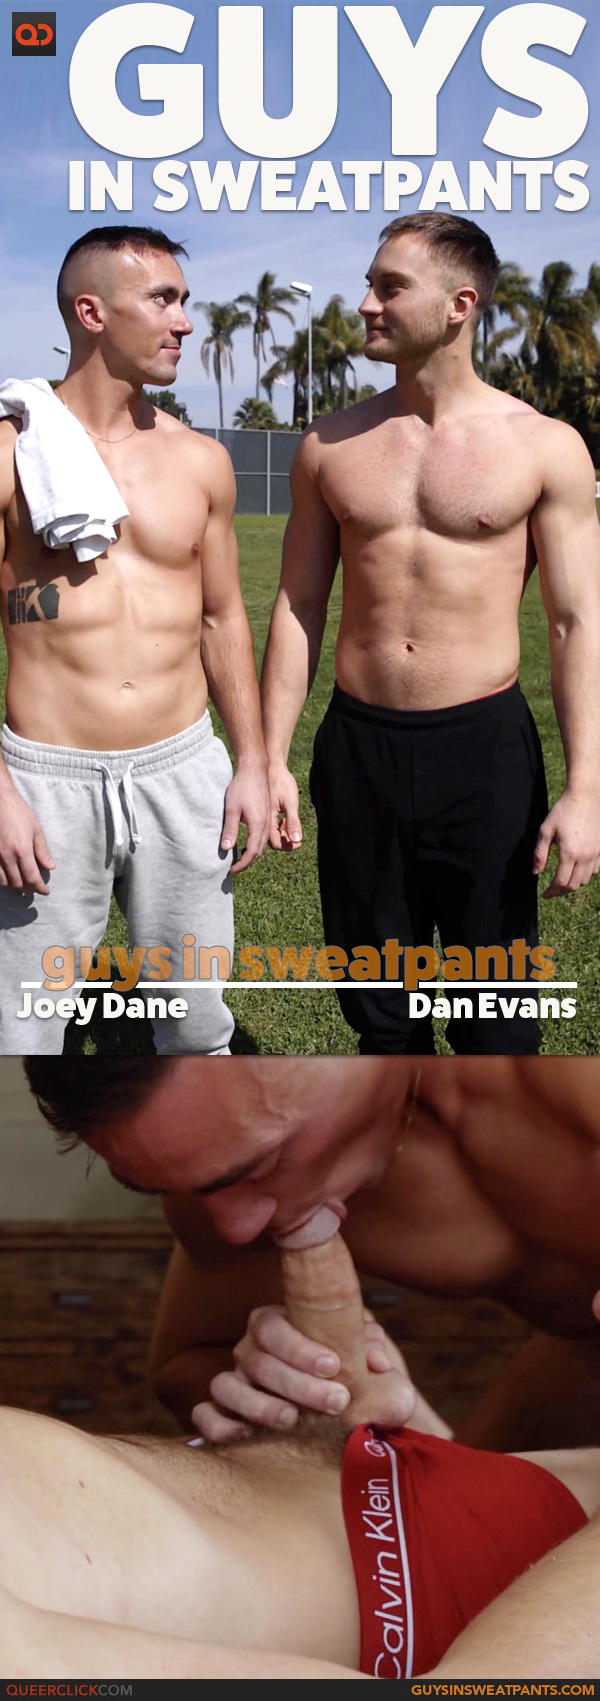 Guys in Sweatpants: Dan Evans and Joey Dane